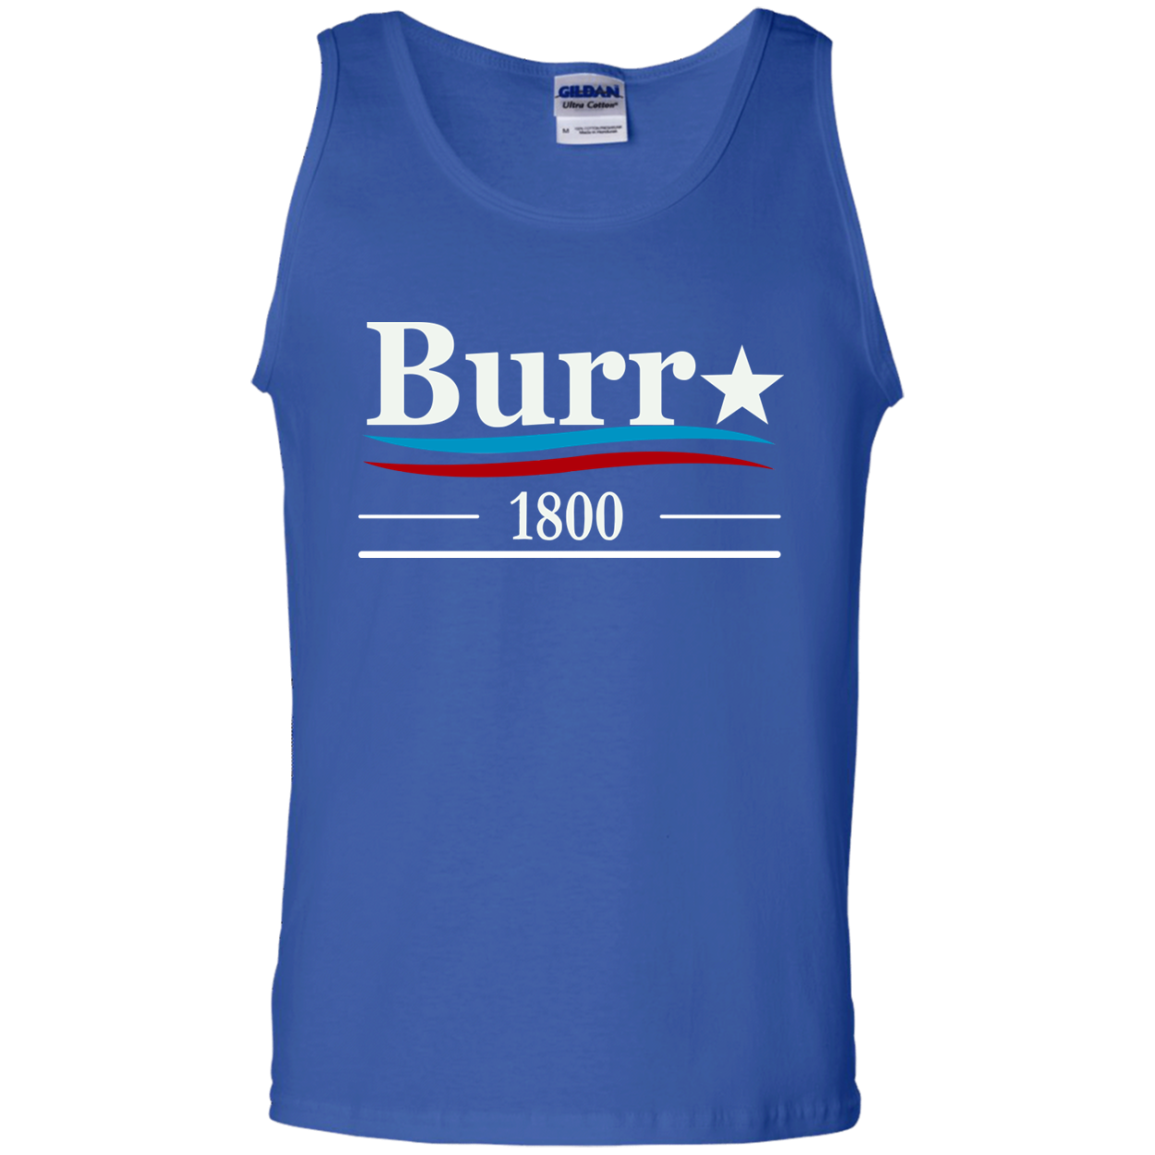 burr 1800 t shirt